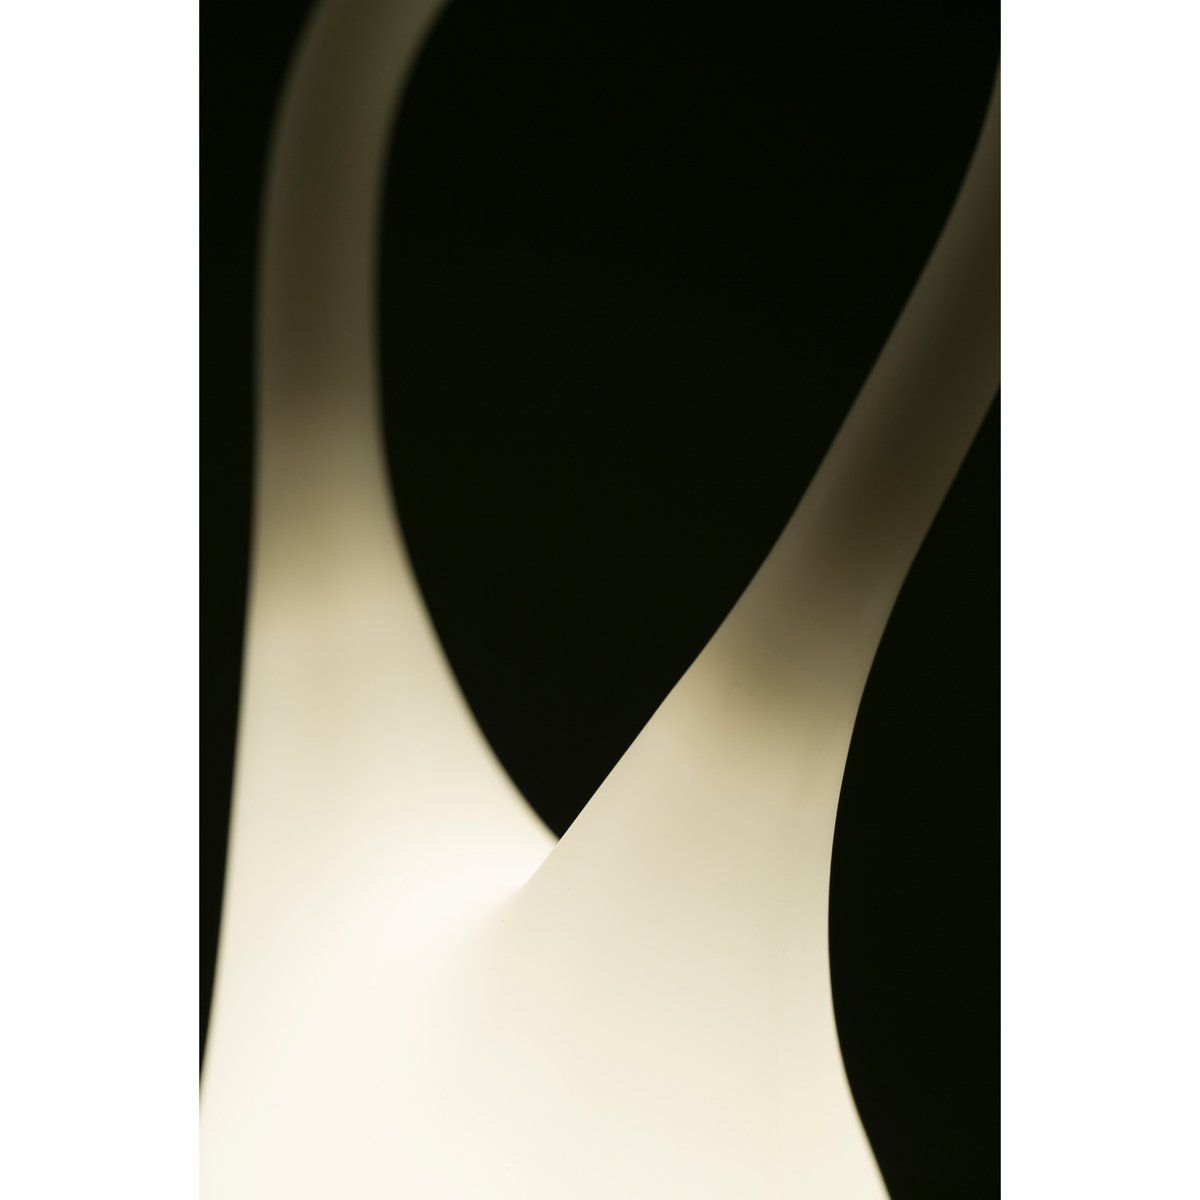 Ruban lumineux LED FLOW blanc (1.5m) - Keria et Laurie Lumière